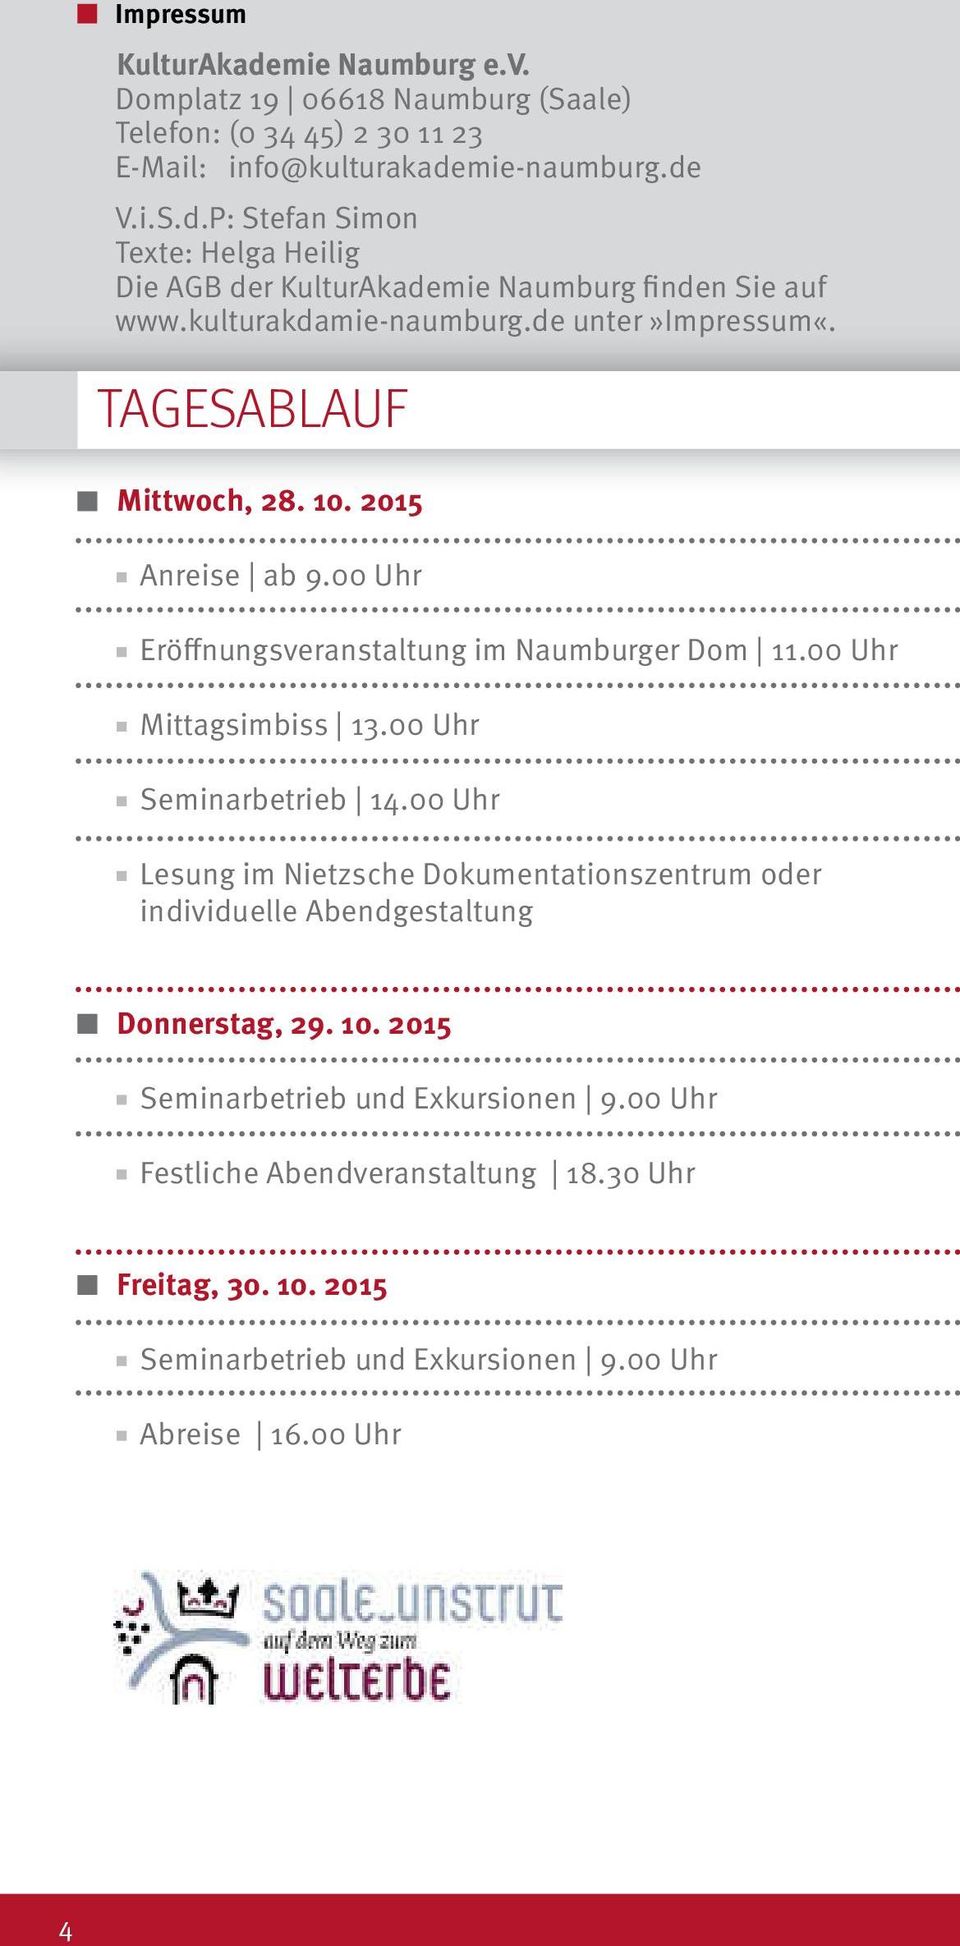 00 Uhr Seminarbetrieb 14.00 Uhr Lesung im Nietzsche Dokumentationszentrum oder individuelle Abendgestaltung Donnerstag, 29. 10. 2015 Seminarbetrieb und Exkursionen 9.